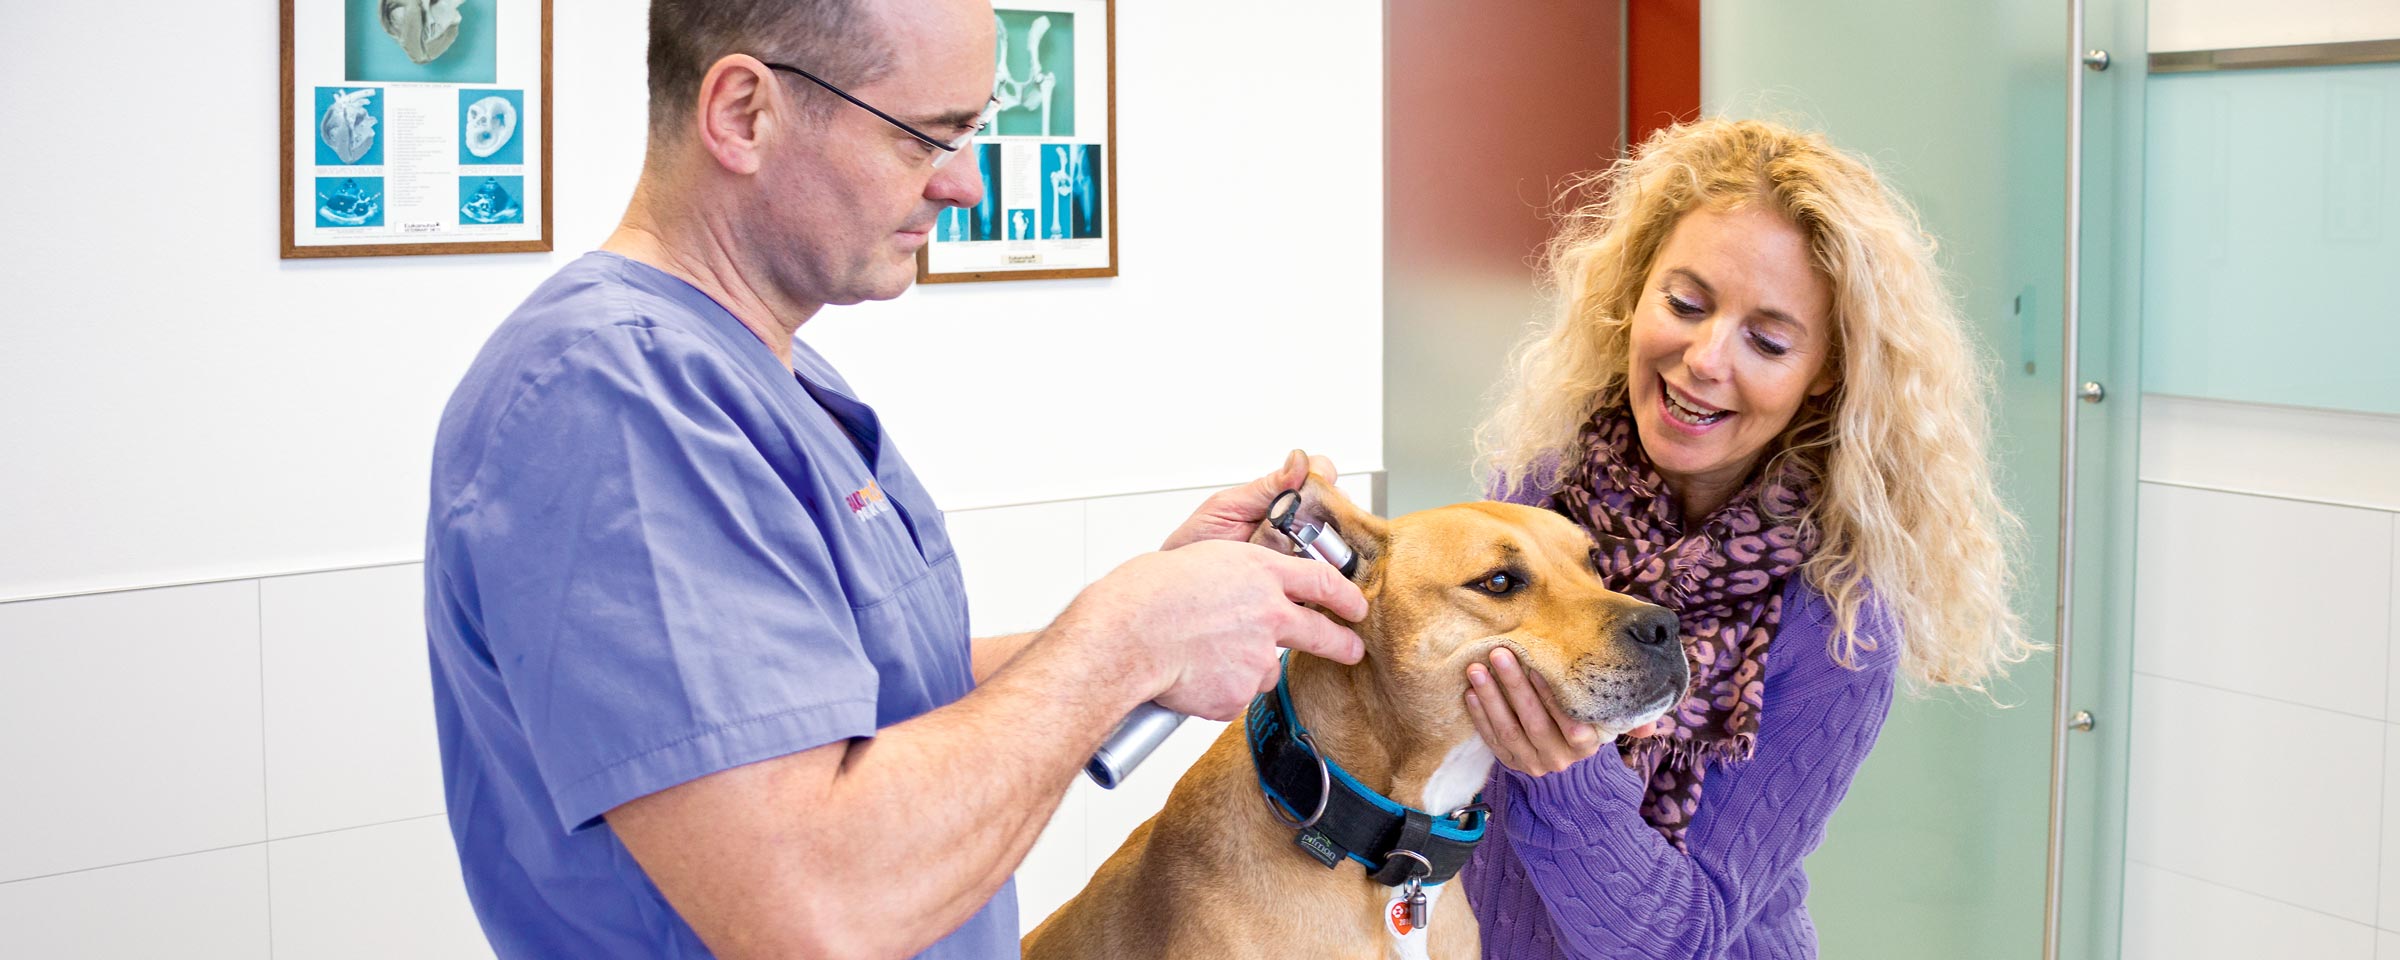 Tierarzt Dr. Kucher untersucht Hund